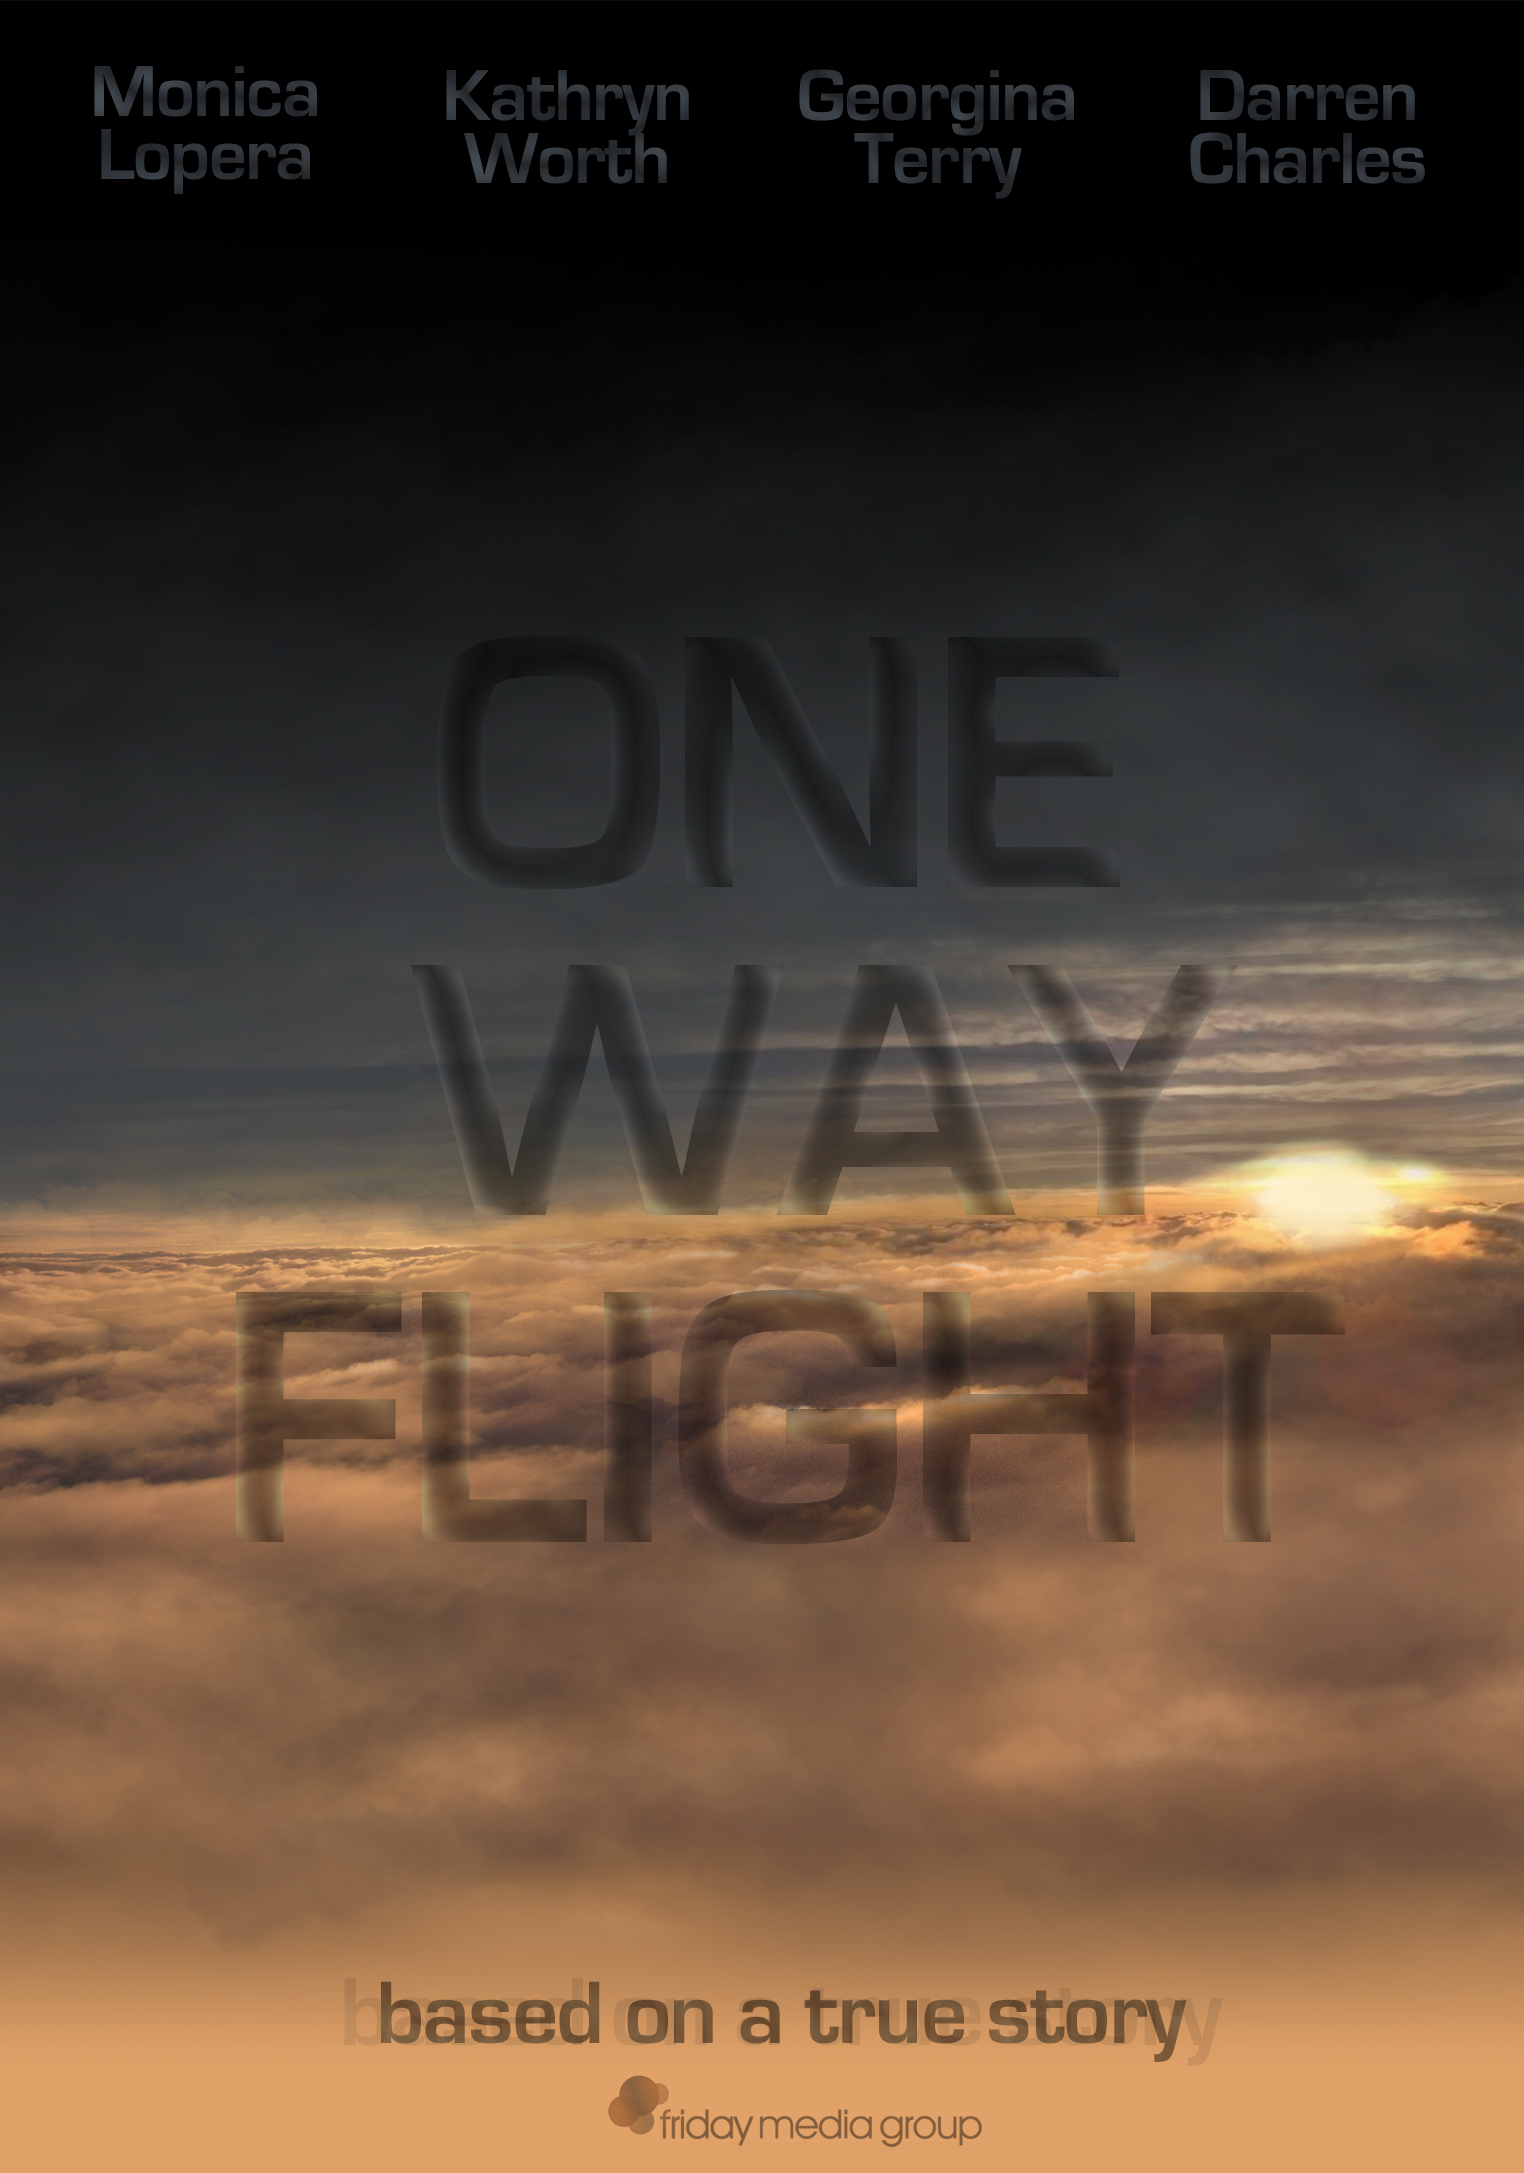 One Way Flight